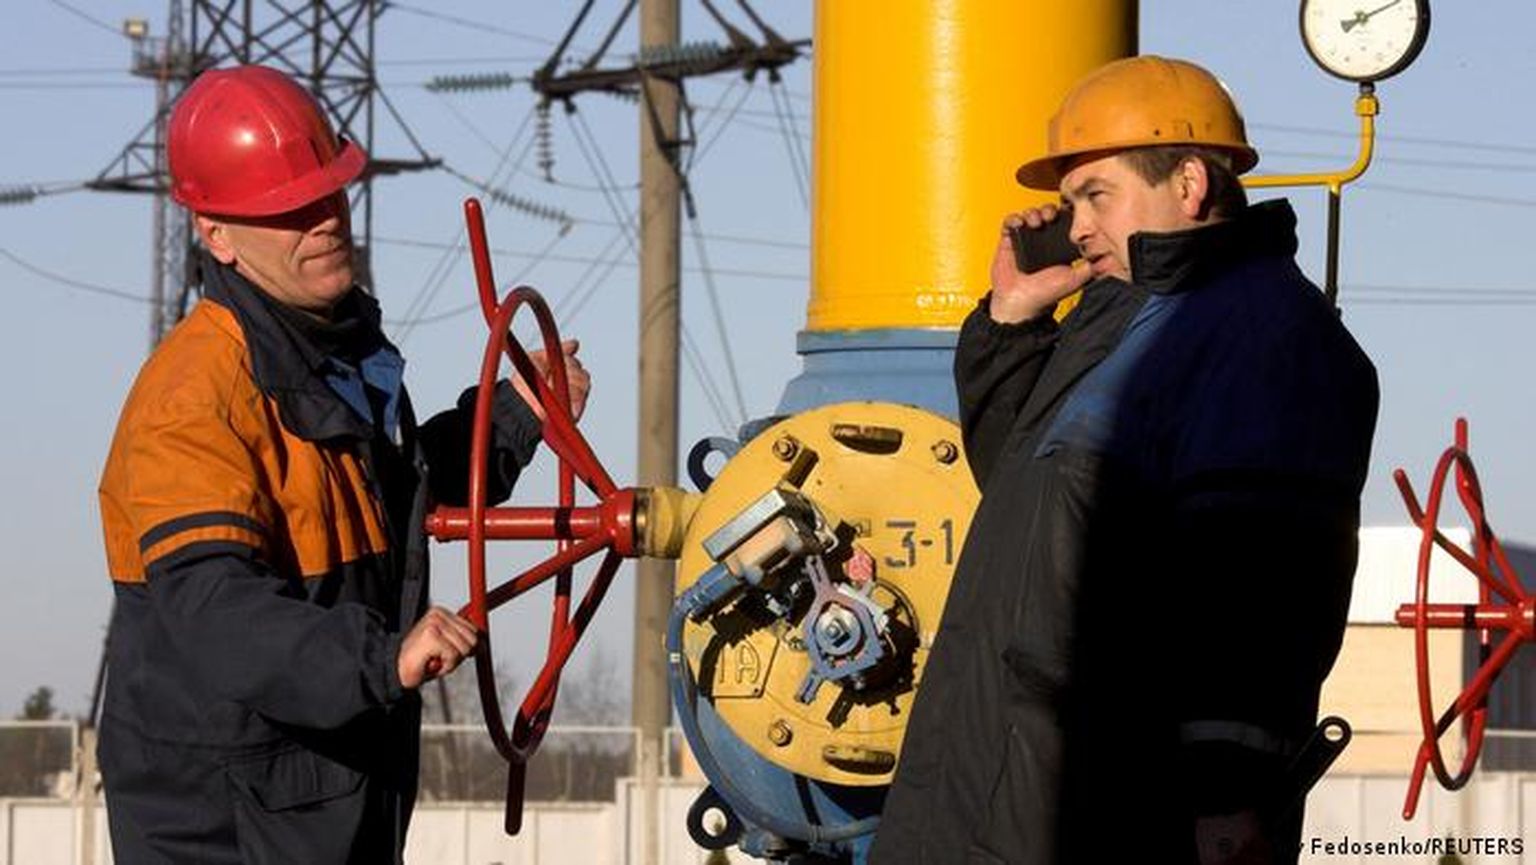 Белорусский правитель грозит заблокировать газопровод "Ямал-Европа", принадлежащий "Газпрому" и снабжающий как раз те газохранилища в ФРГ, которые велел заполнить Владимир Путин.